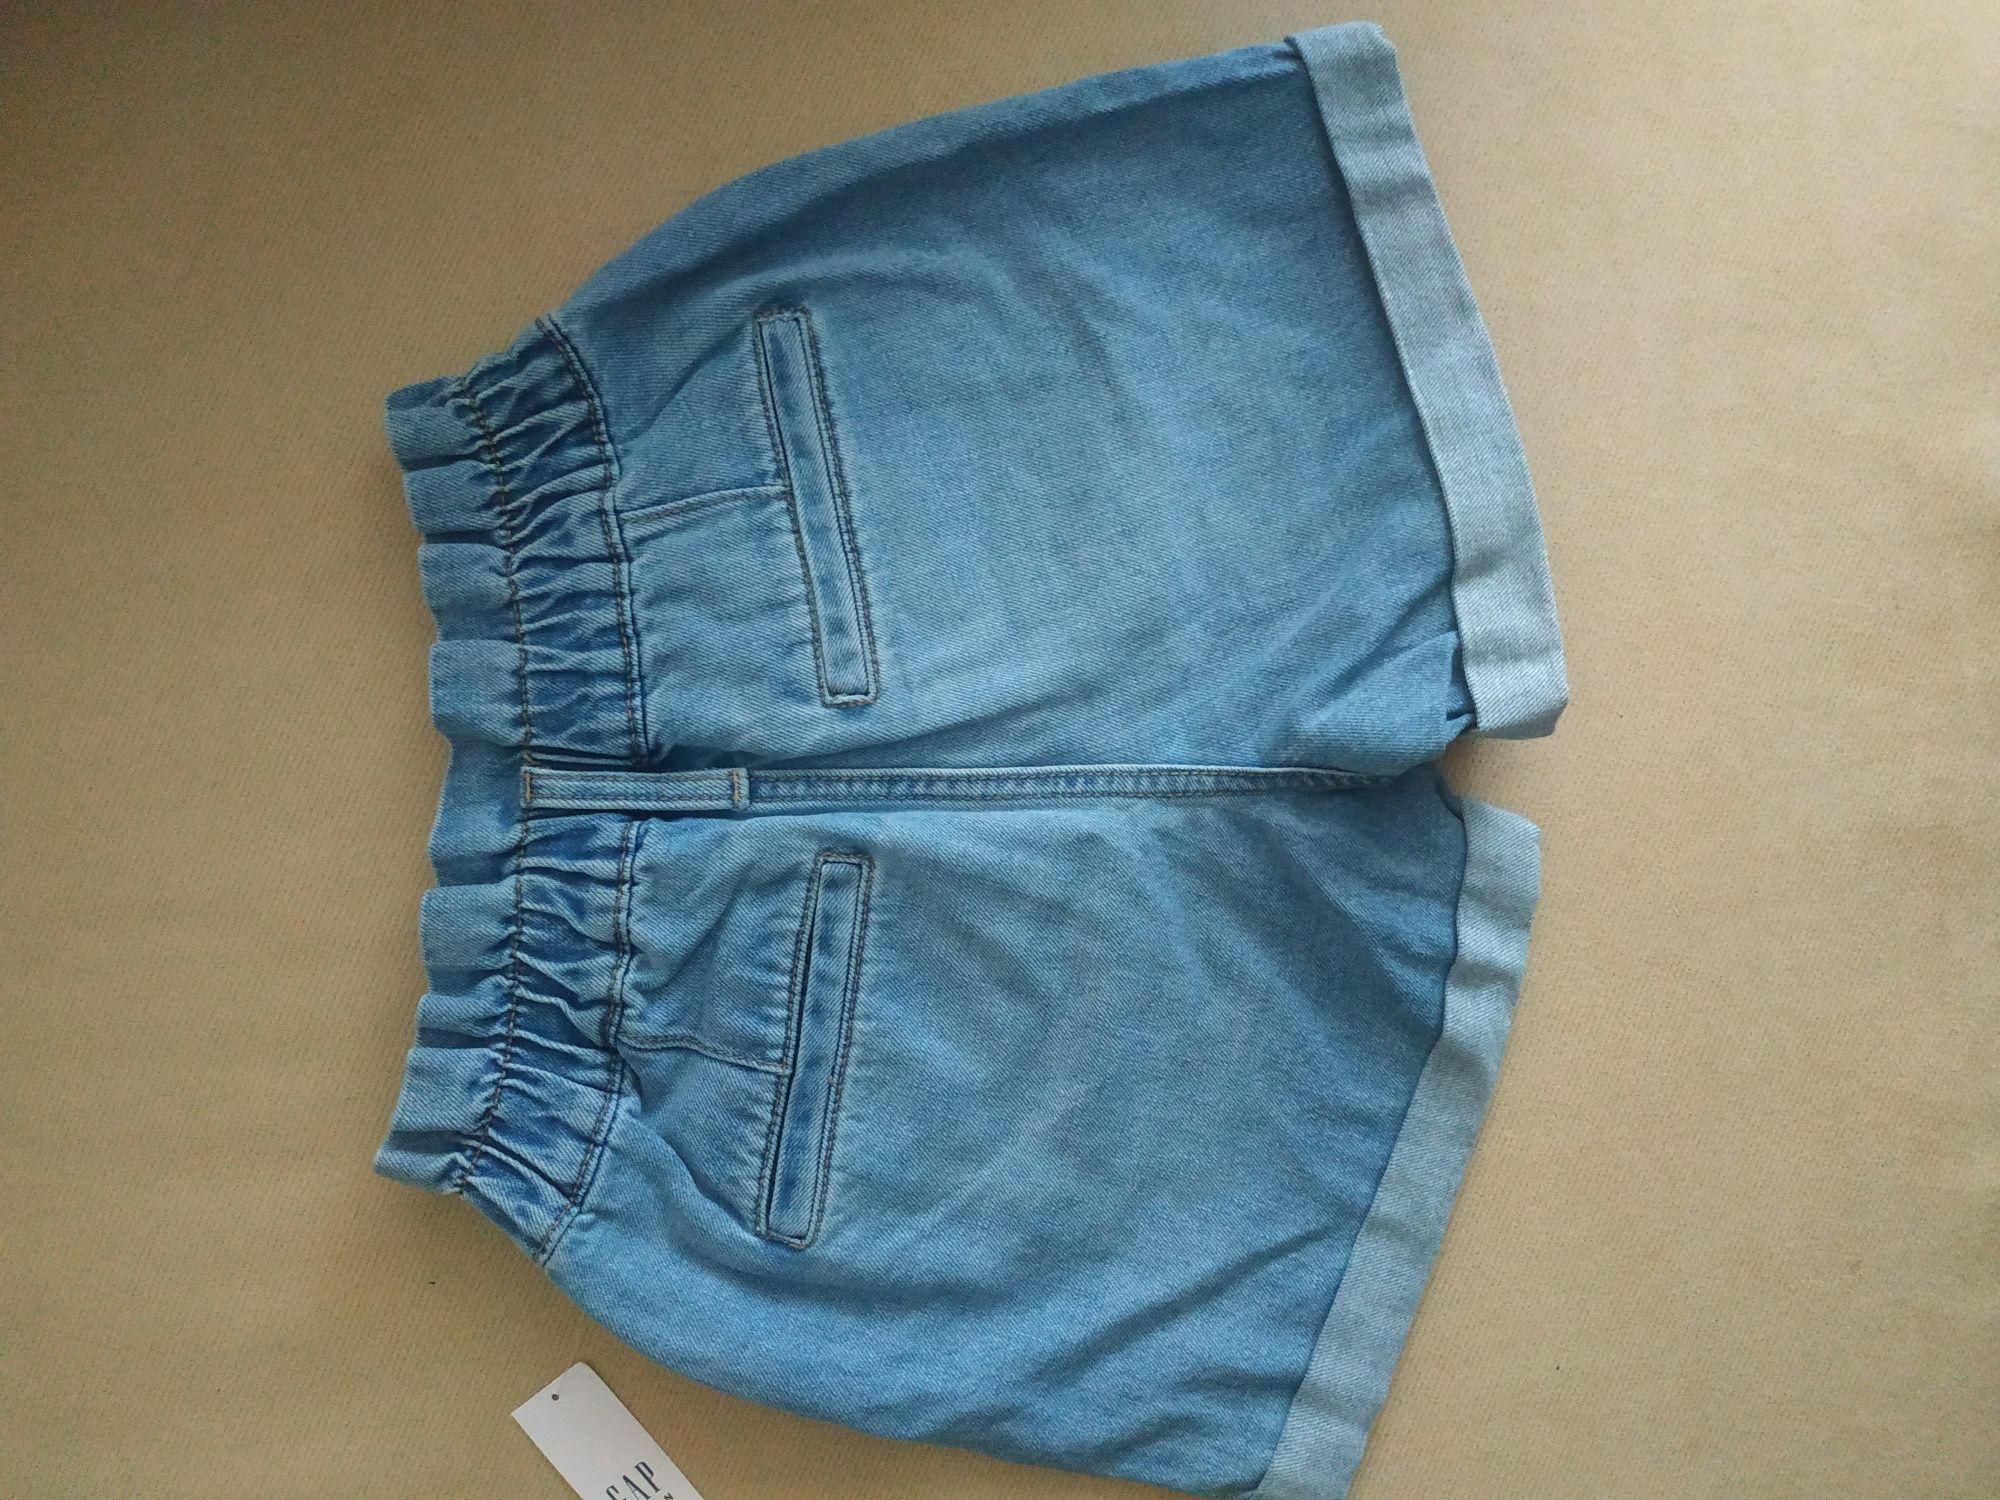 Модные джинсовые шорты с высокой талией на 8-10 лет

GAP